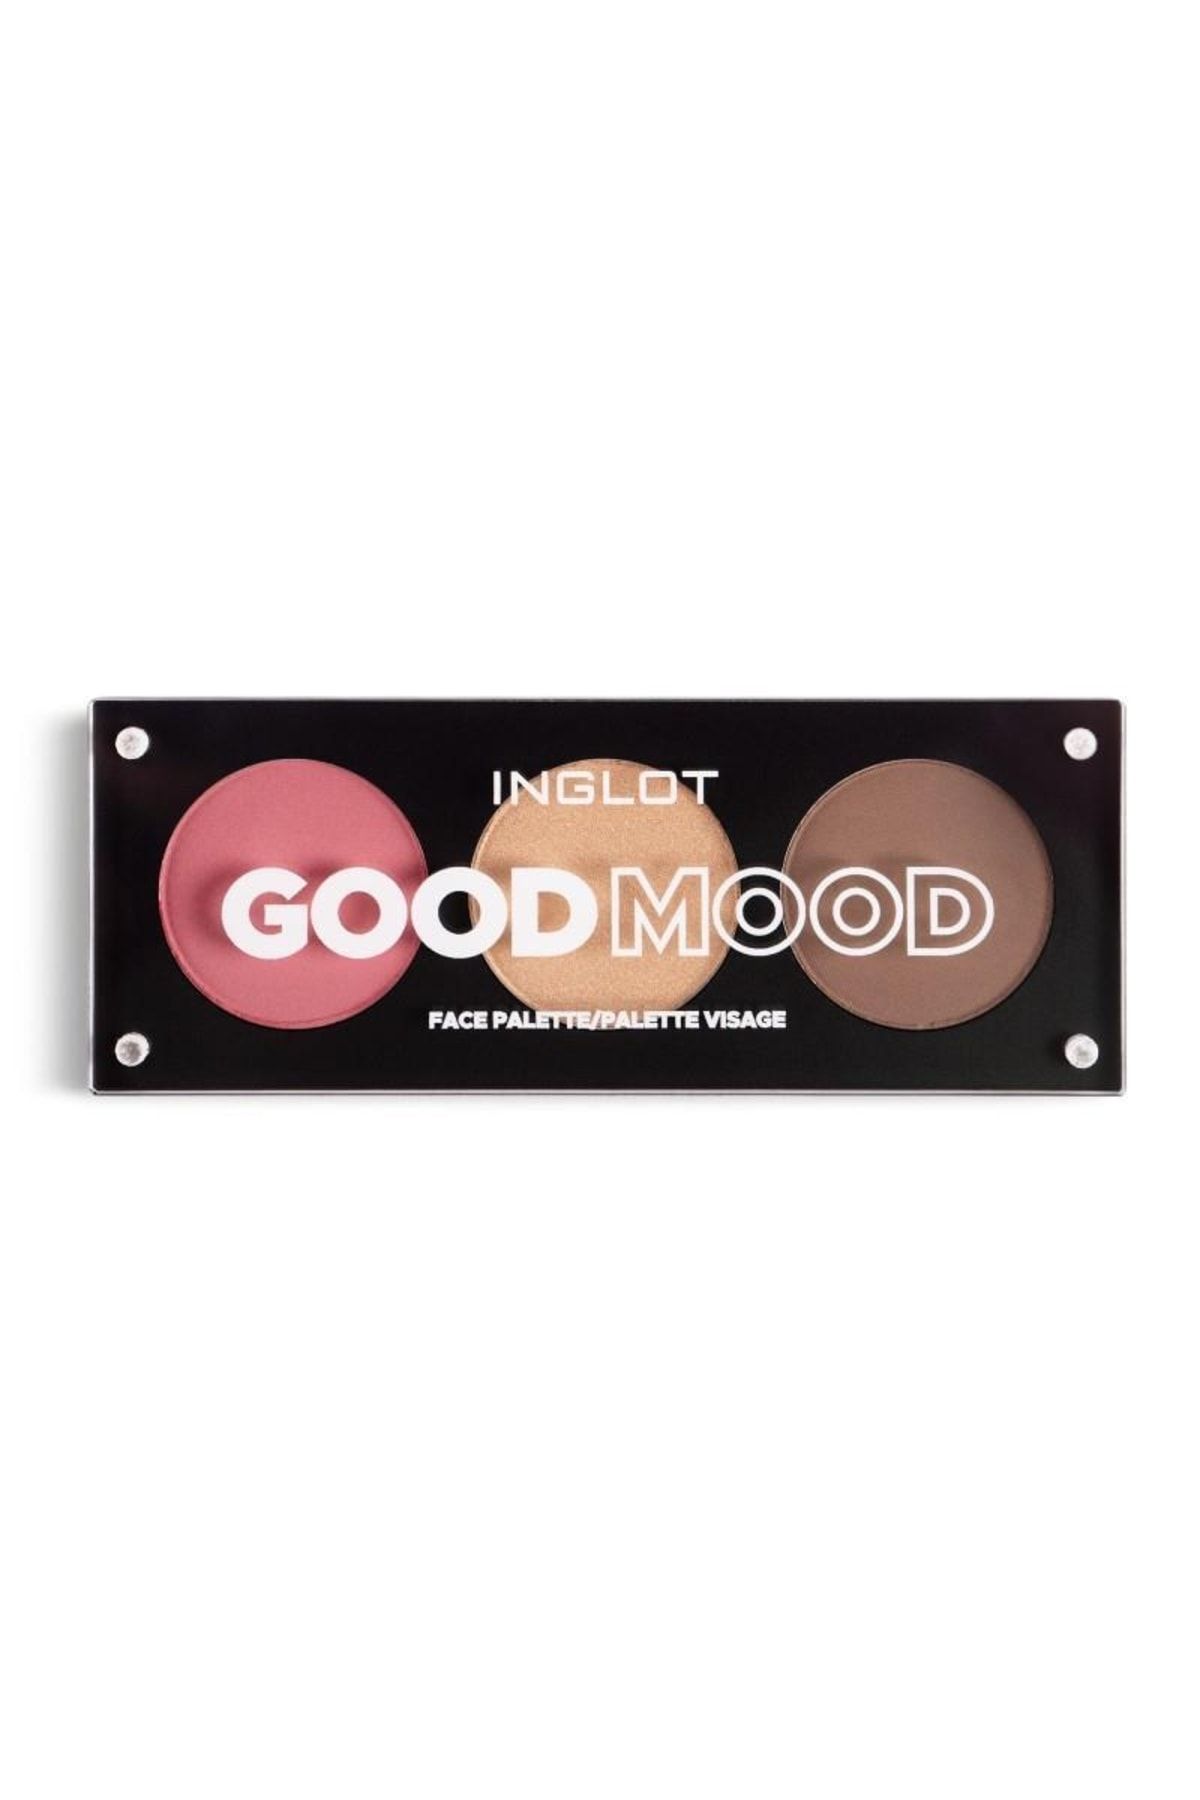 Inglot Good Mood Face Palette